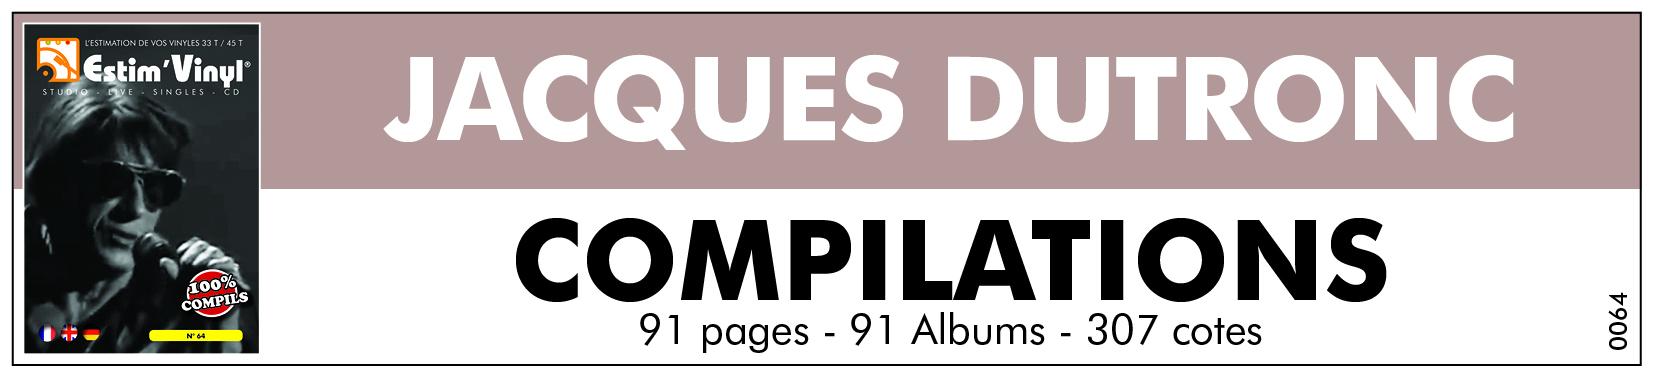 Jacques Dutonc, l'estimation des albums compilation de Jacques Dutronc, la valeur des compilations de Jacques Dutronc, prix compilations Jacques Dutronc, www.estimvinyl.com